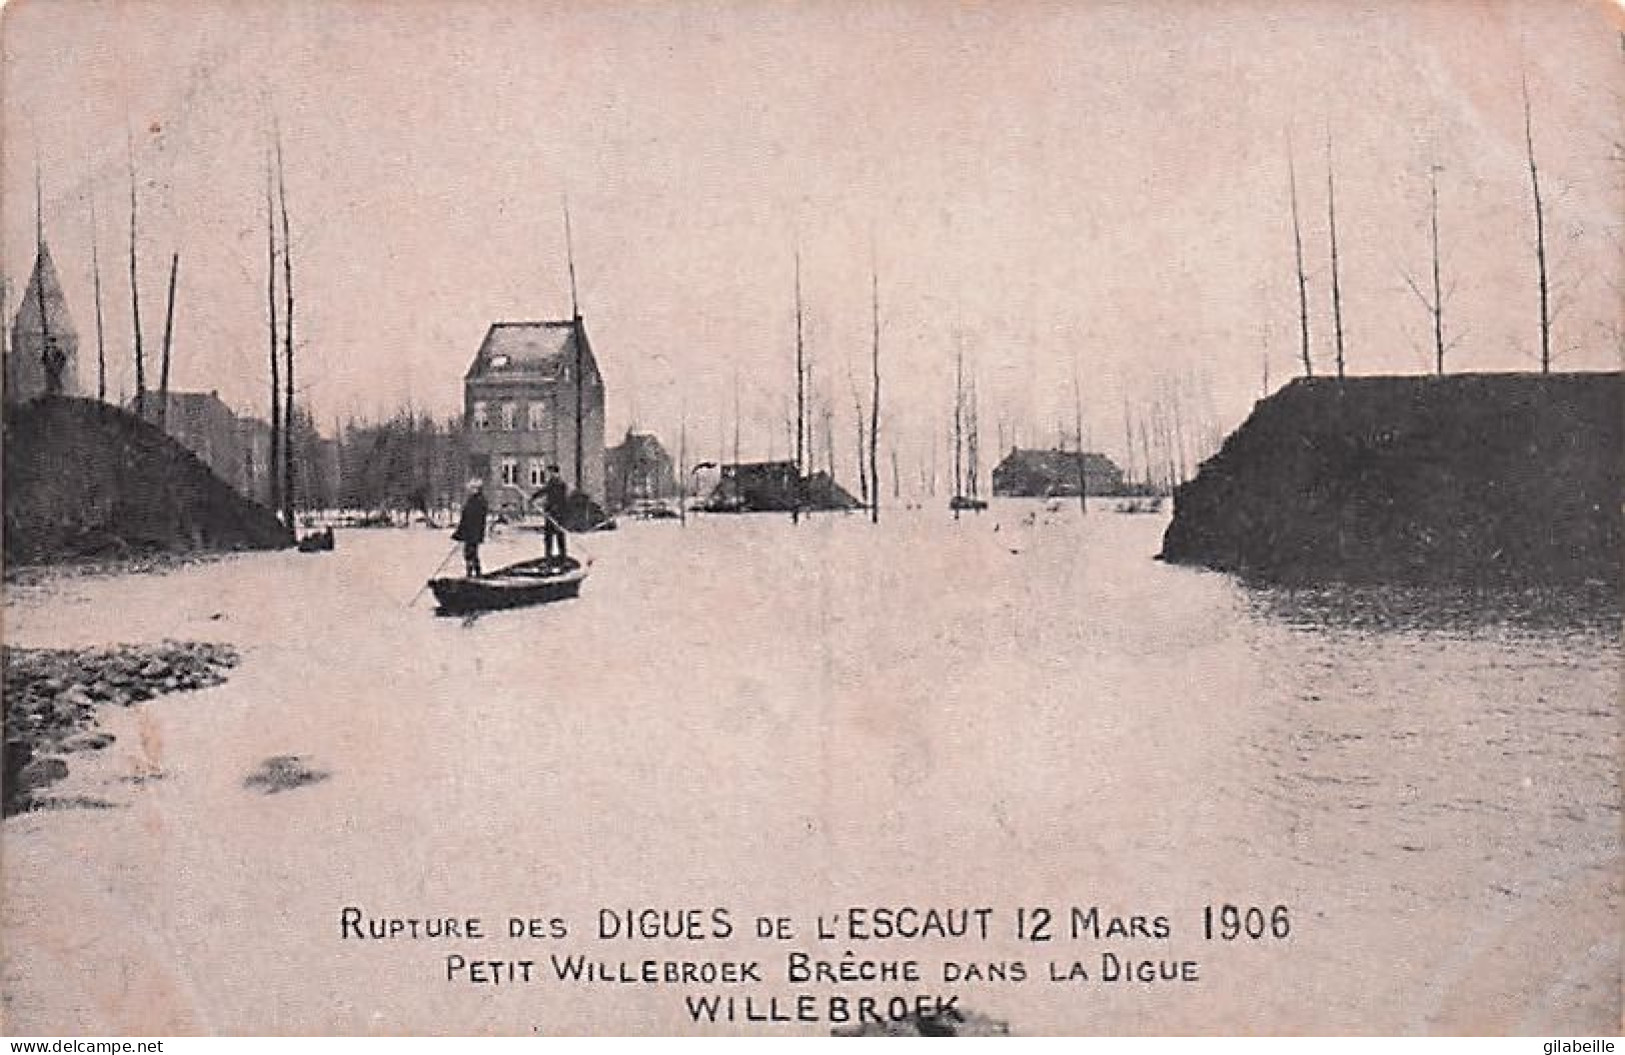  Antwerpen - Anvers -  Willebroek - Willebroeck  -rupture Des Digues De L'Escaut 12 Mars 1906 - Willebrök